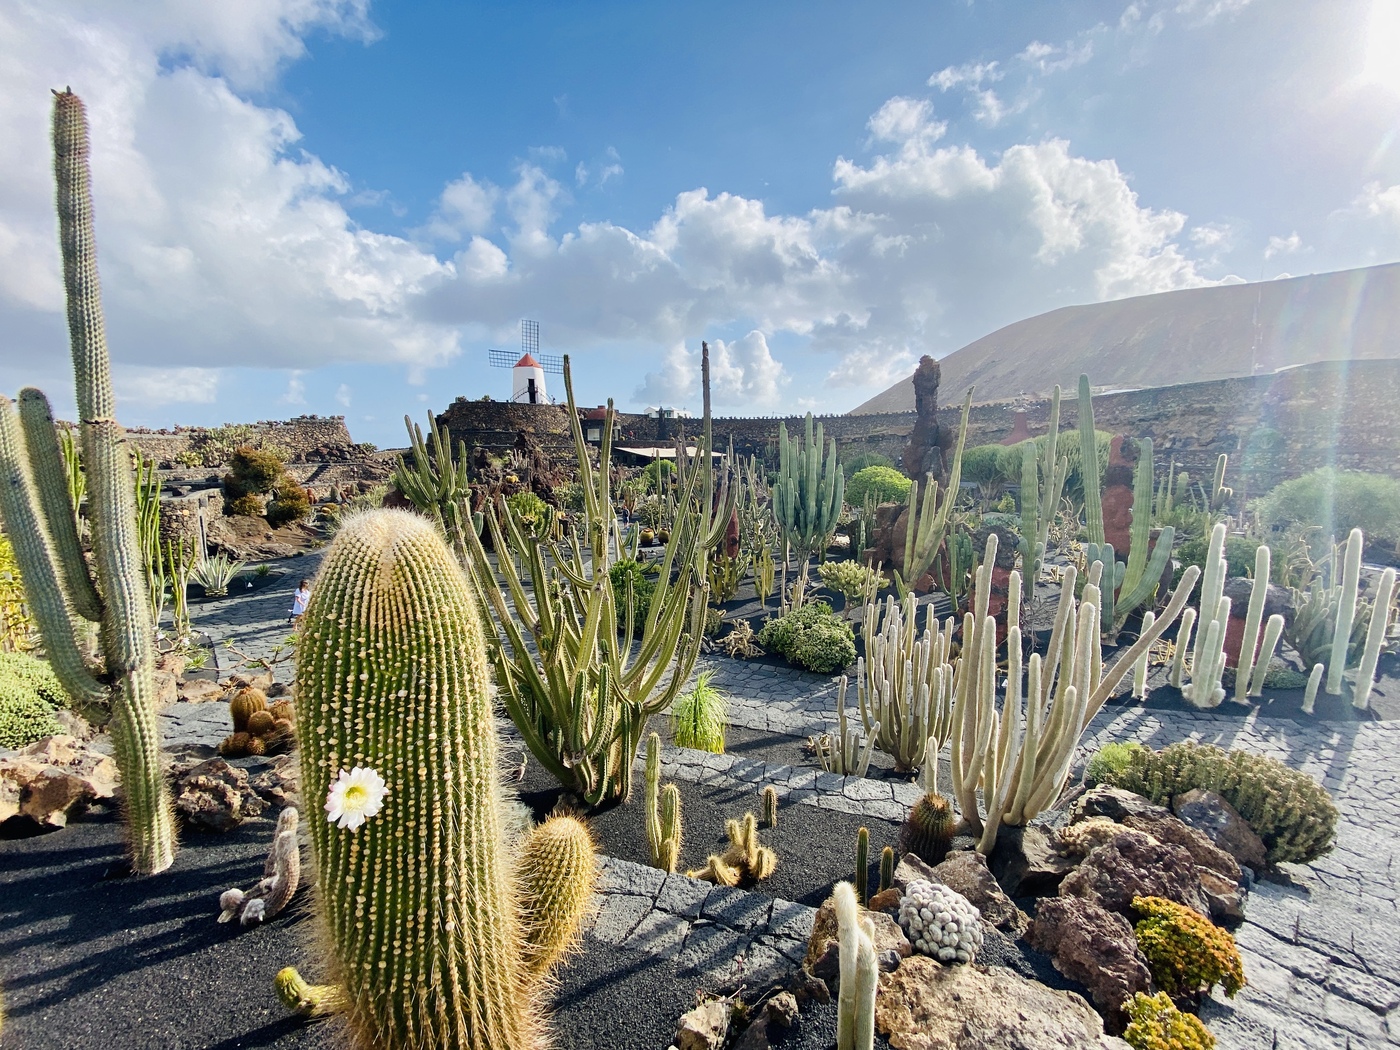 jardin de cactus lanzarote 3 - Erfahrung Jardin de Cactus Lanzarote